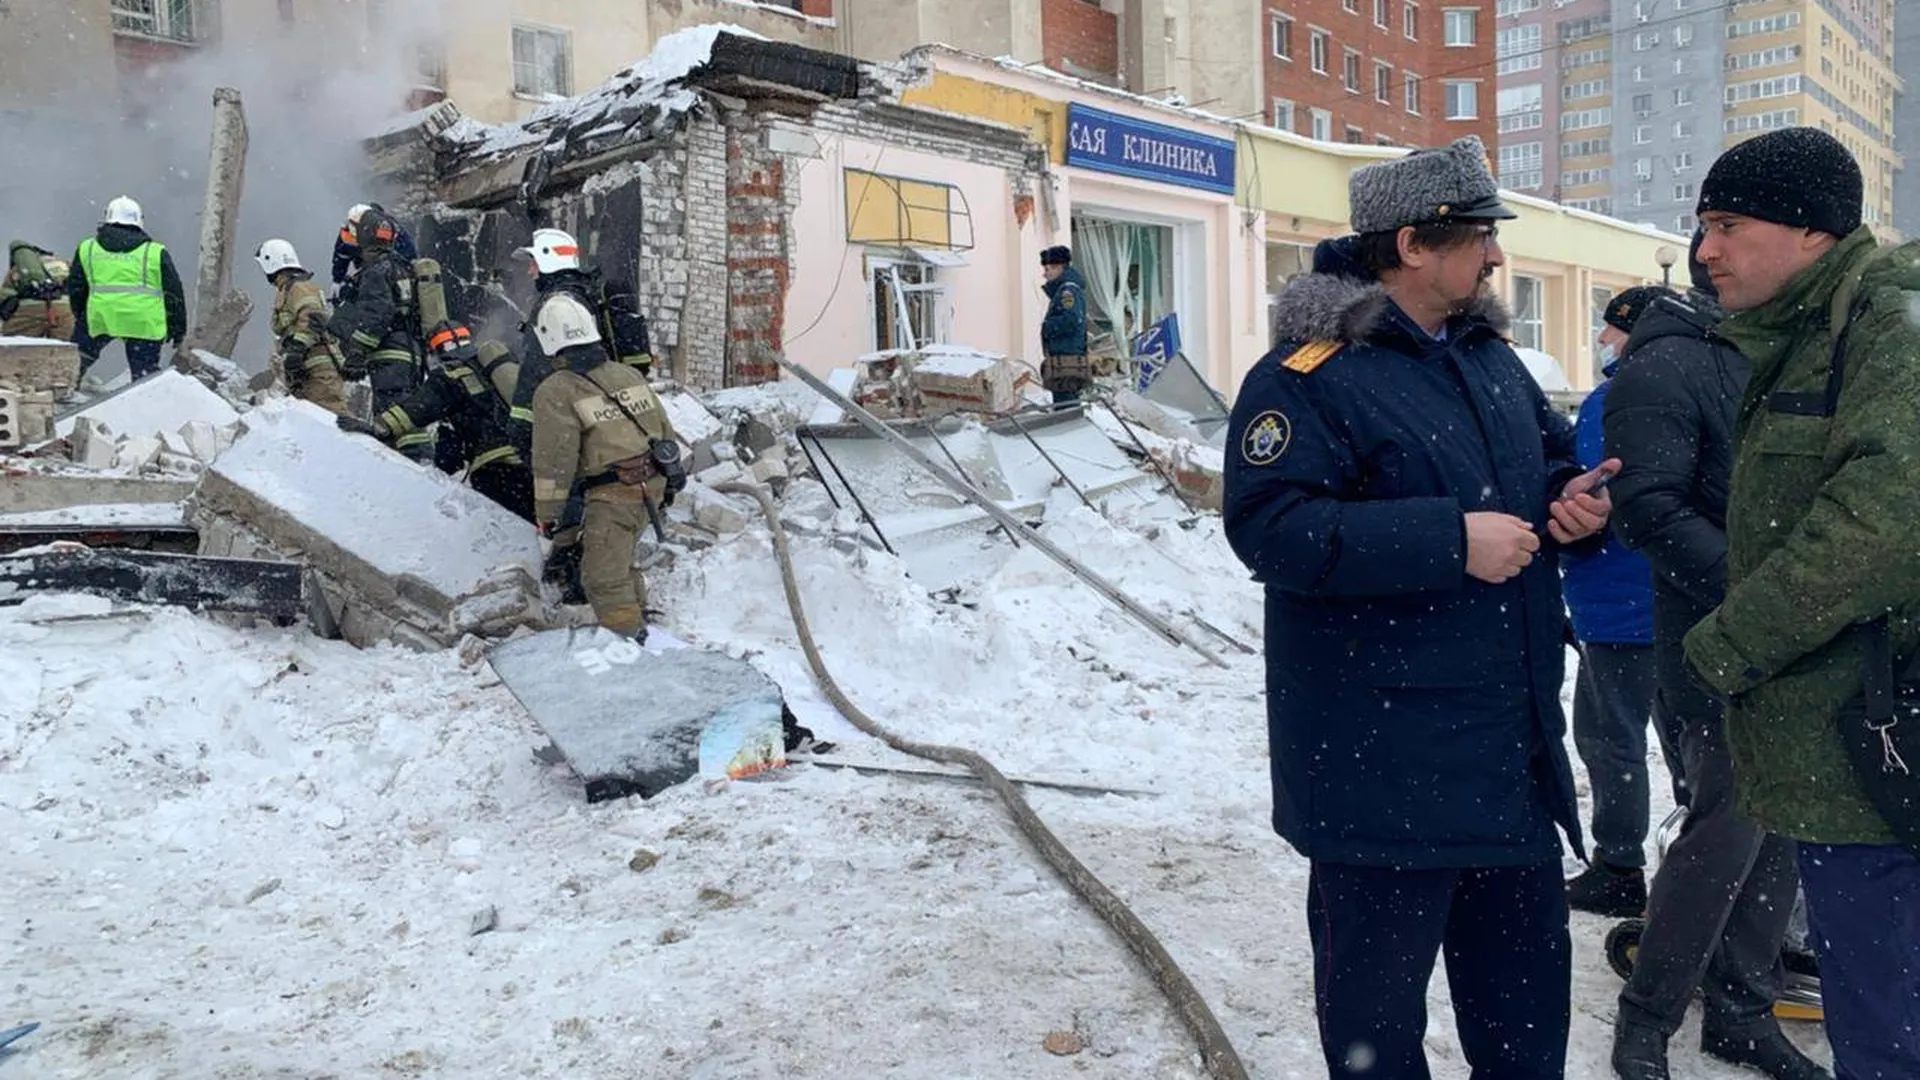 Девушка пострадала при взрыве газа в Нижнем Новгороде. Возбуждено дело